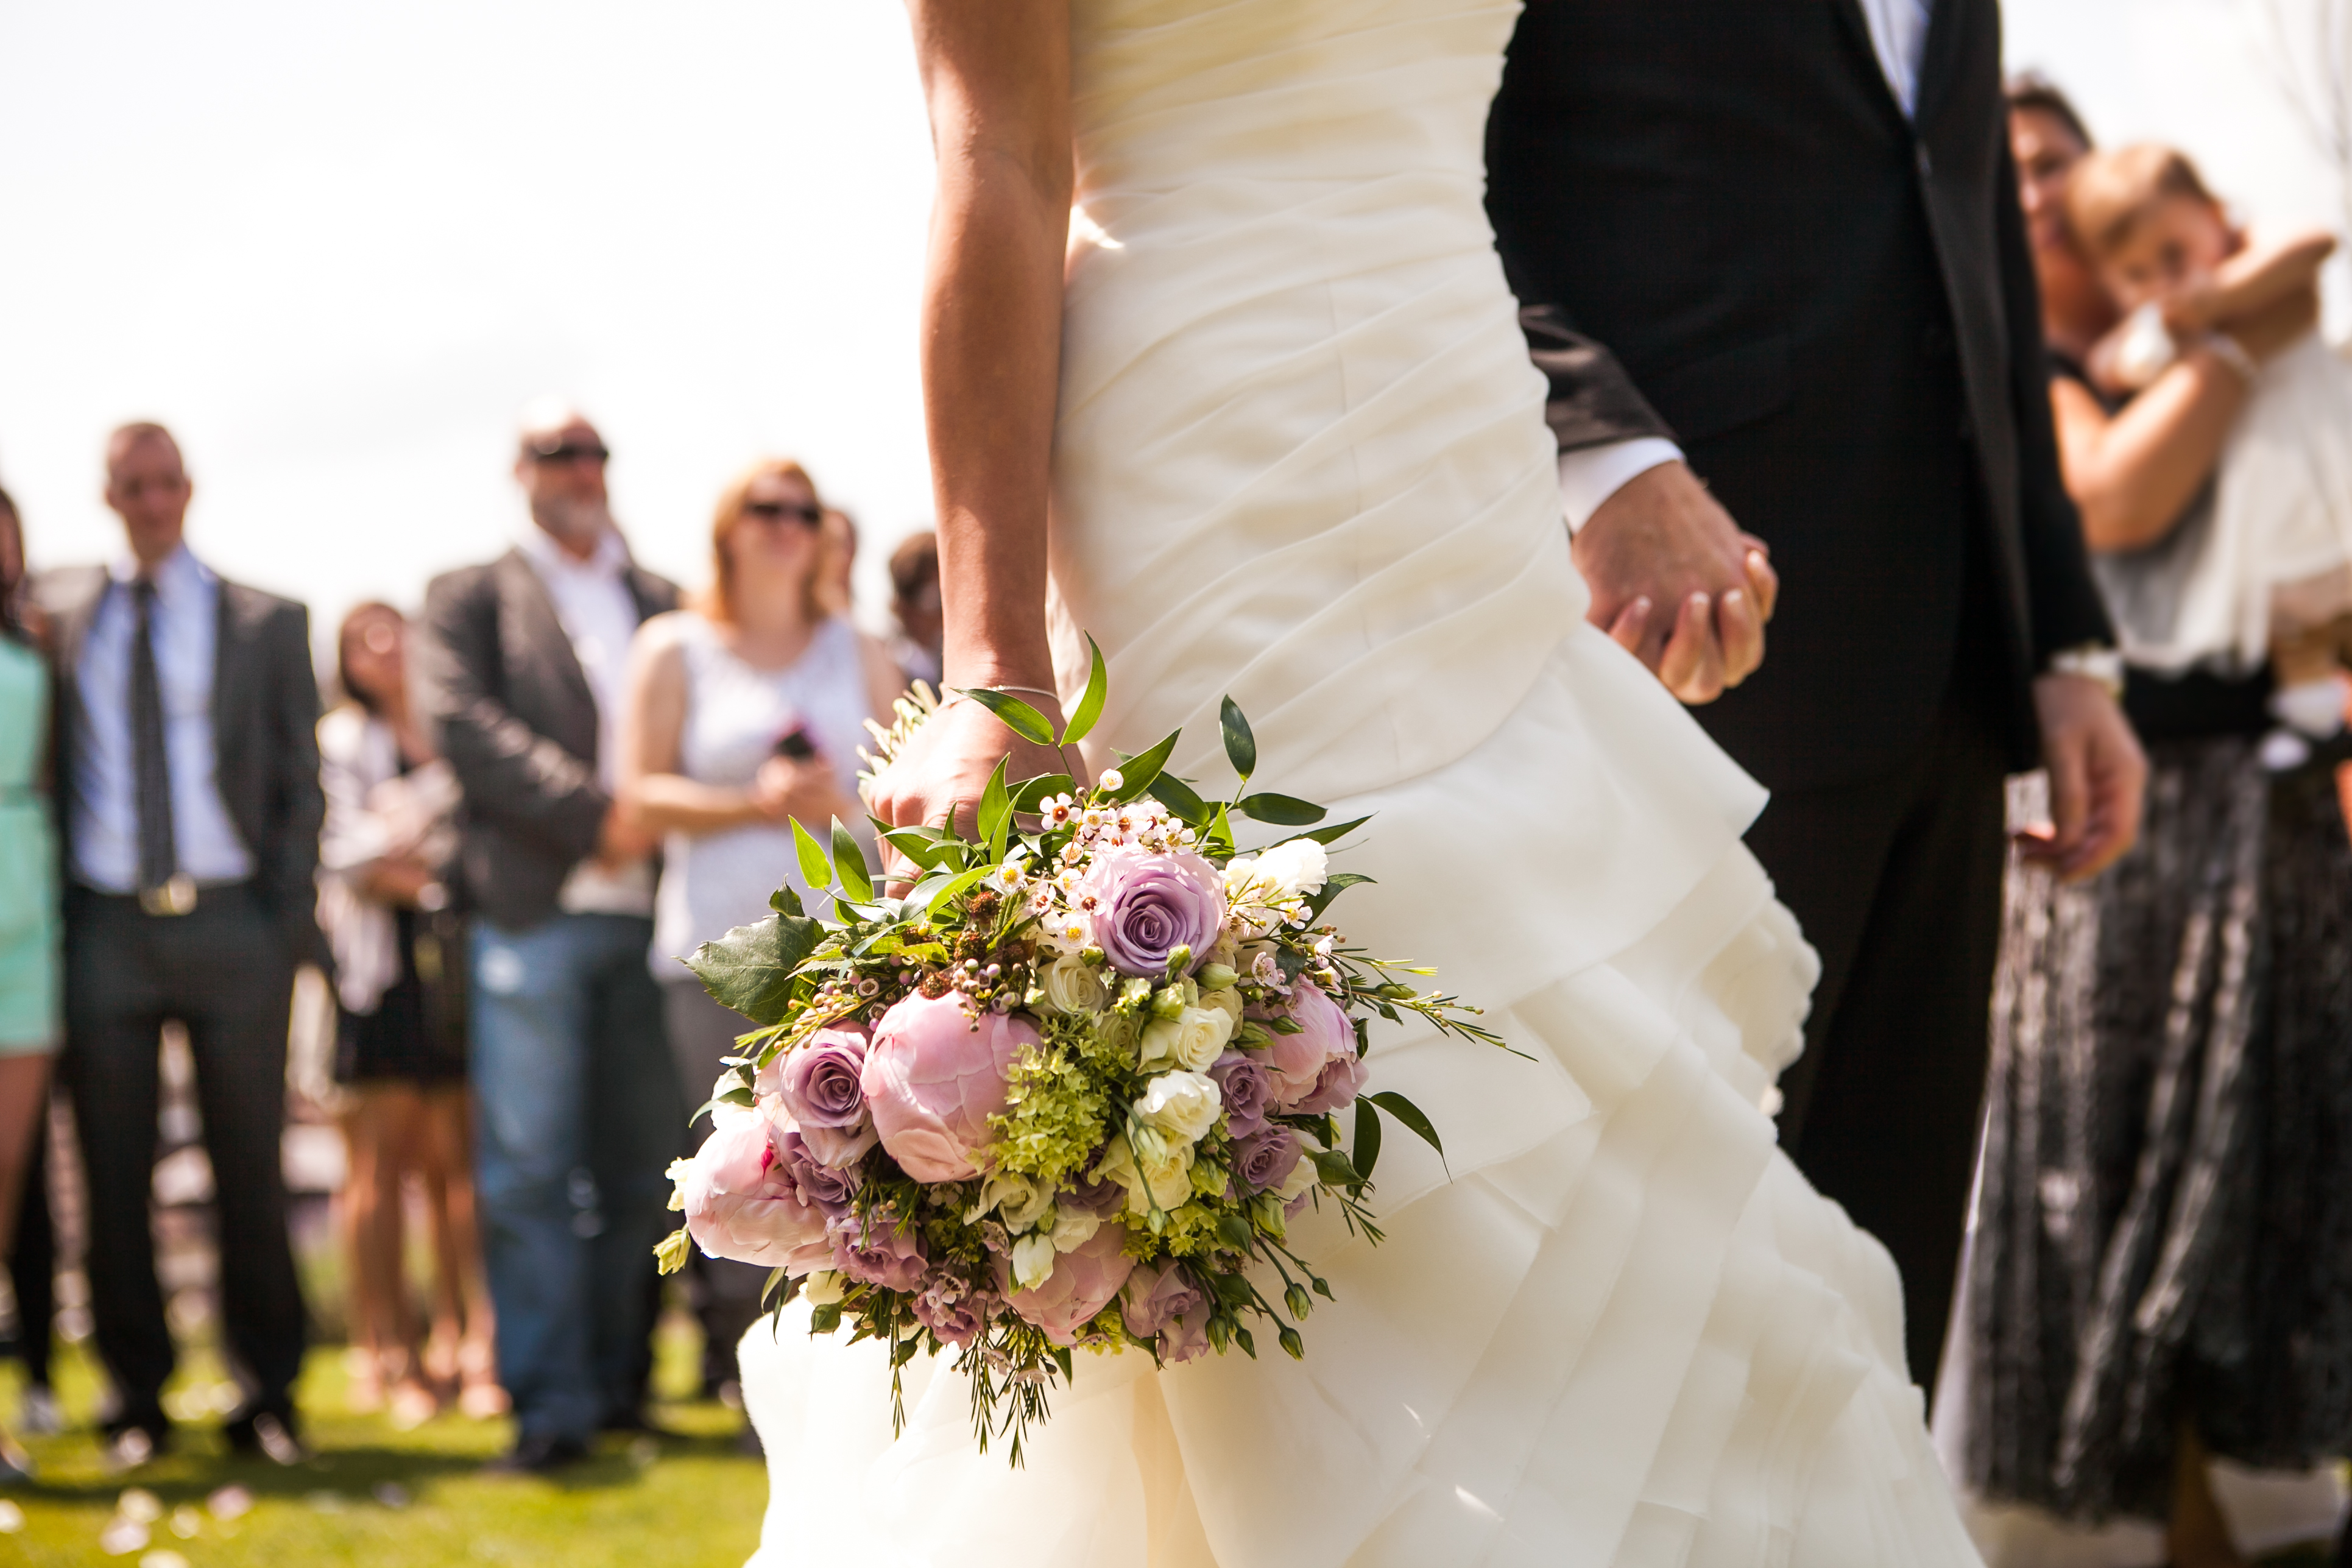 Une mariée et un marié se tenant par la main lors de leur mariage | Source : Shutterstock